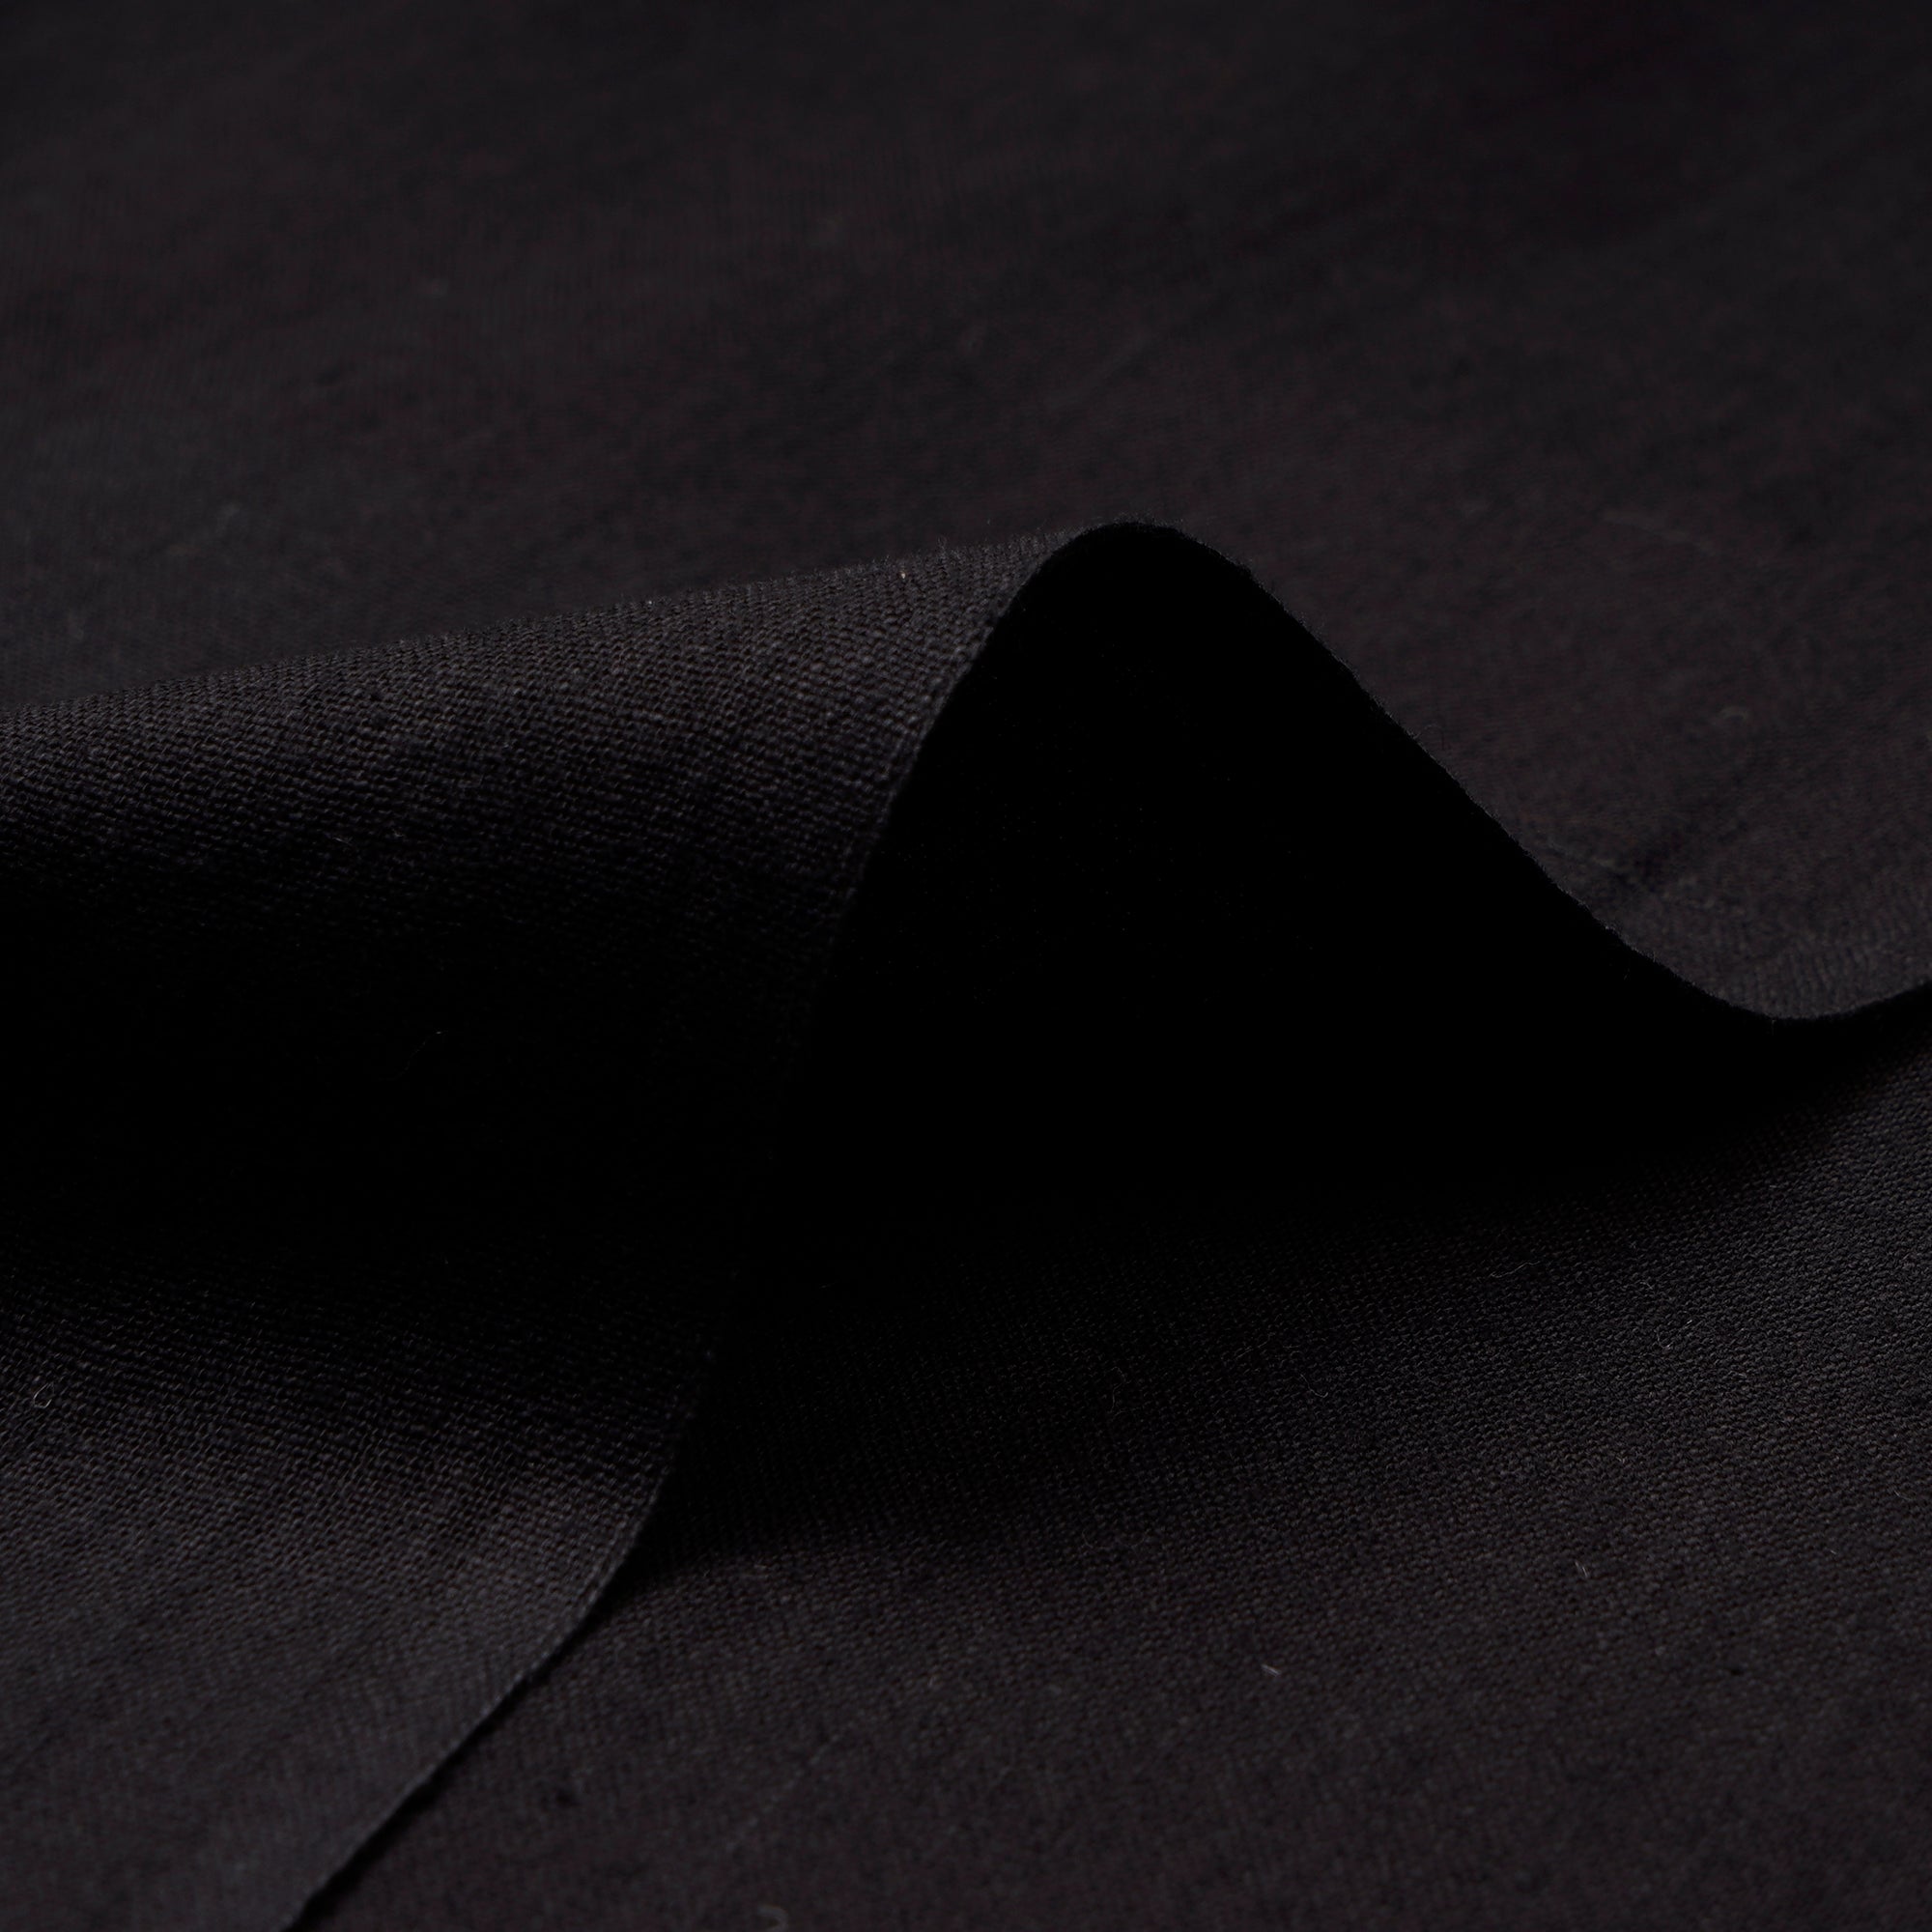 Black Woven Handspun Handwoven Cotton Fabric